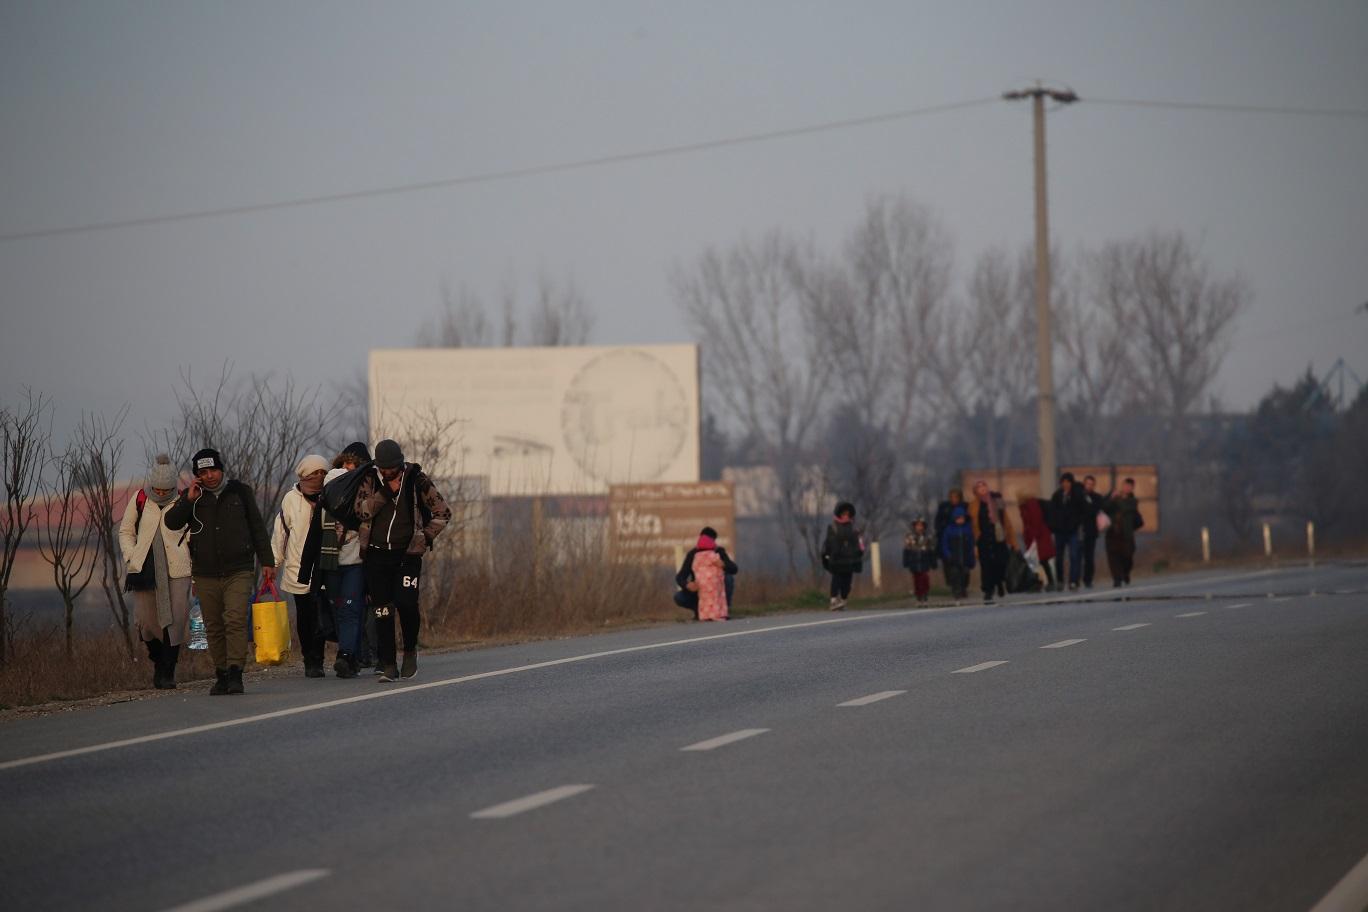 اللاجئون قرروا مغادرة الحدود اليونانية التركية خوفا من تفشي كورونا